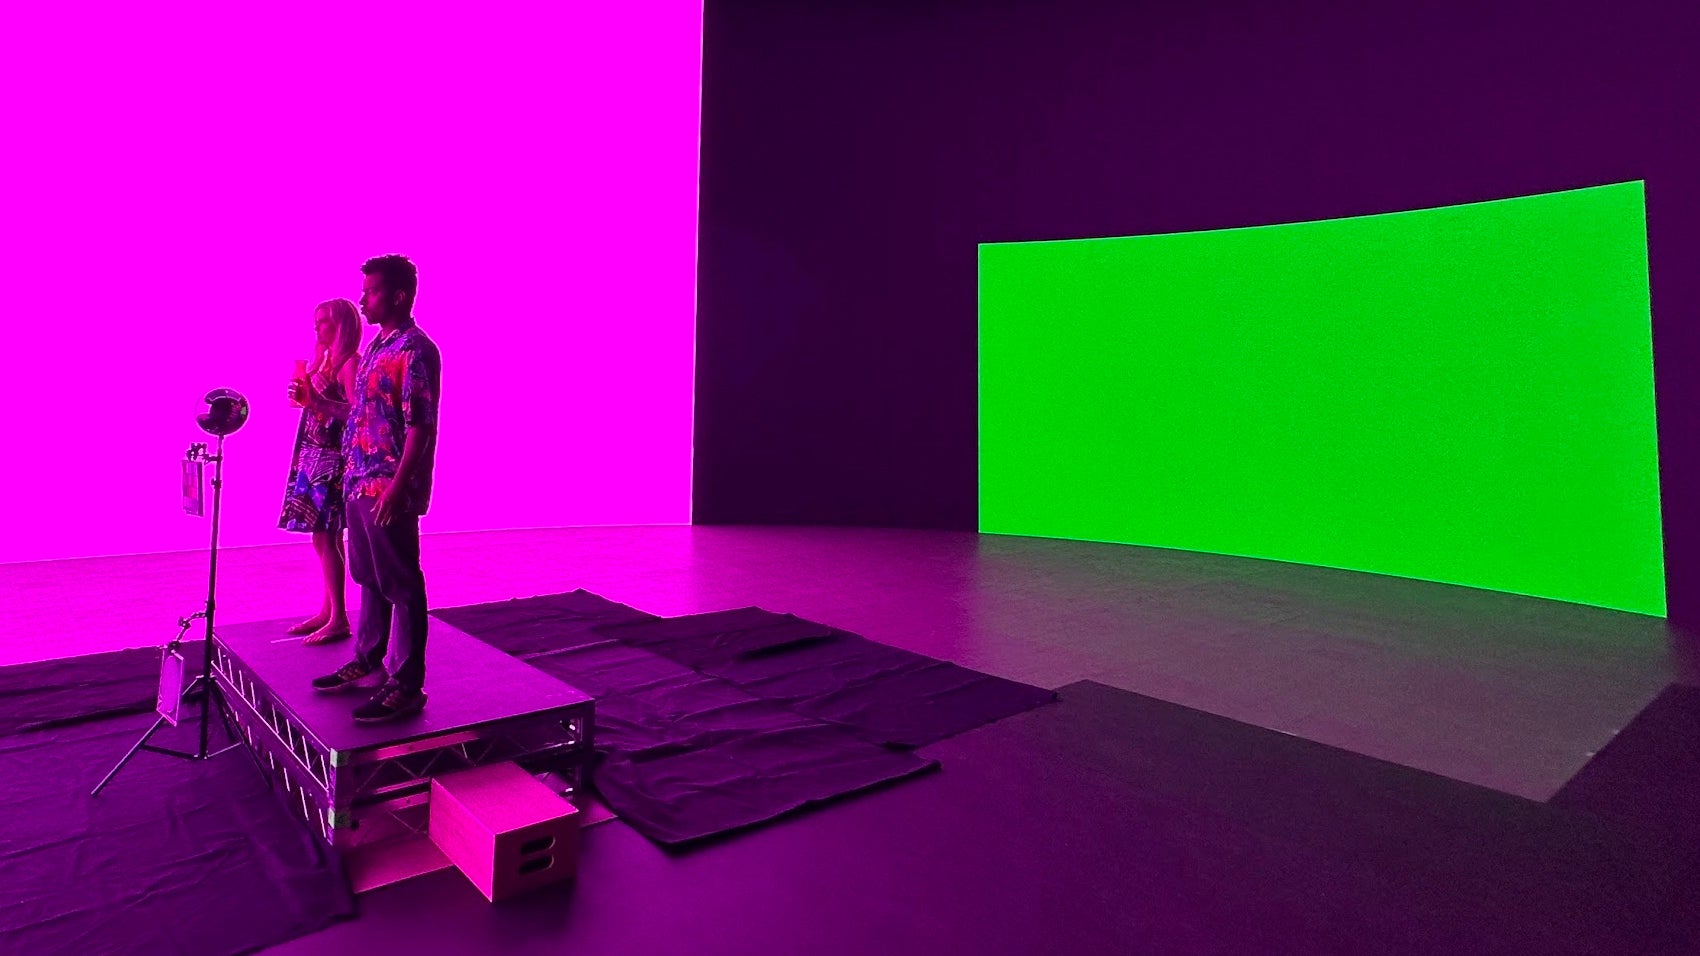 يقف الممثلون على مجموعة محاطة بشاشة LED كبيرة مضاءة بخلفية خضراء وإضاءة أمامية باللونين الأحمر والأزرق.